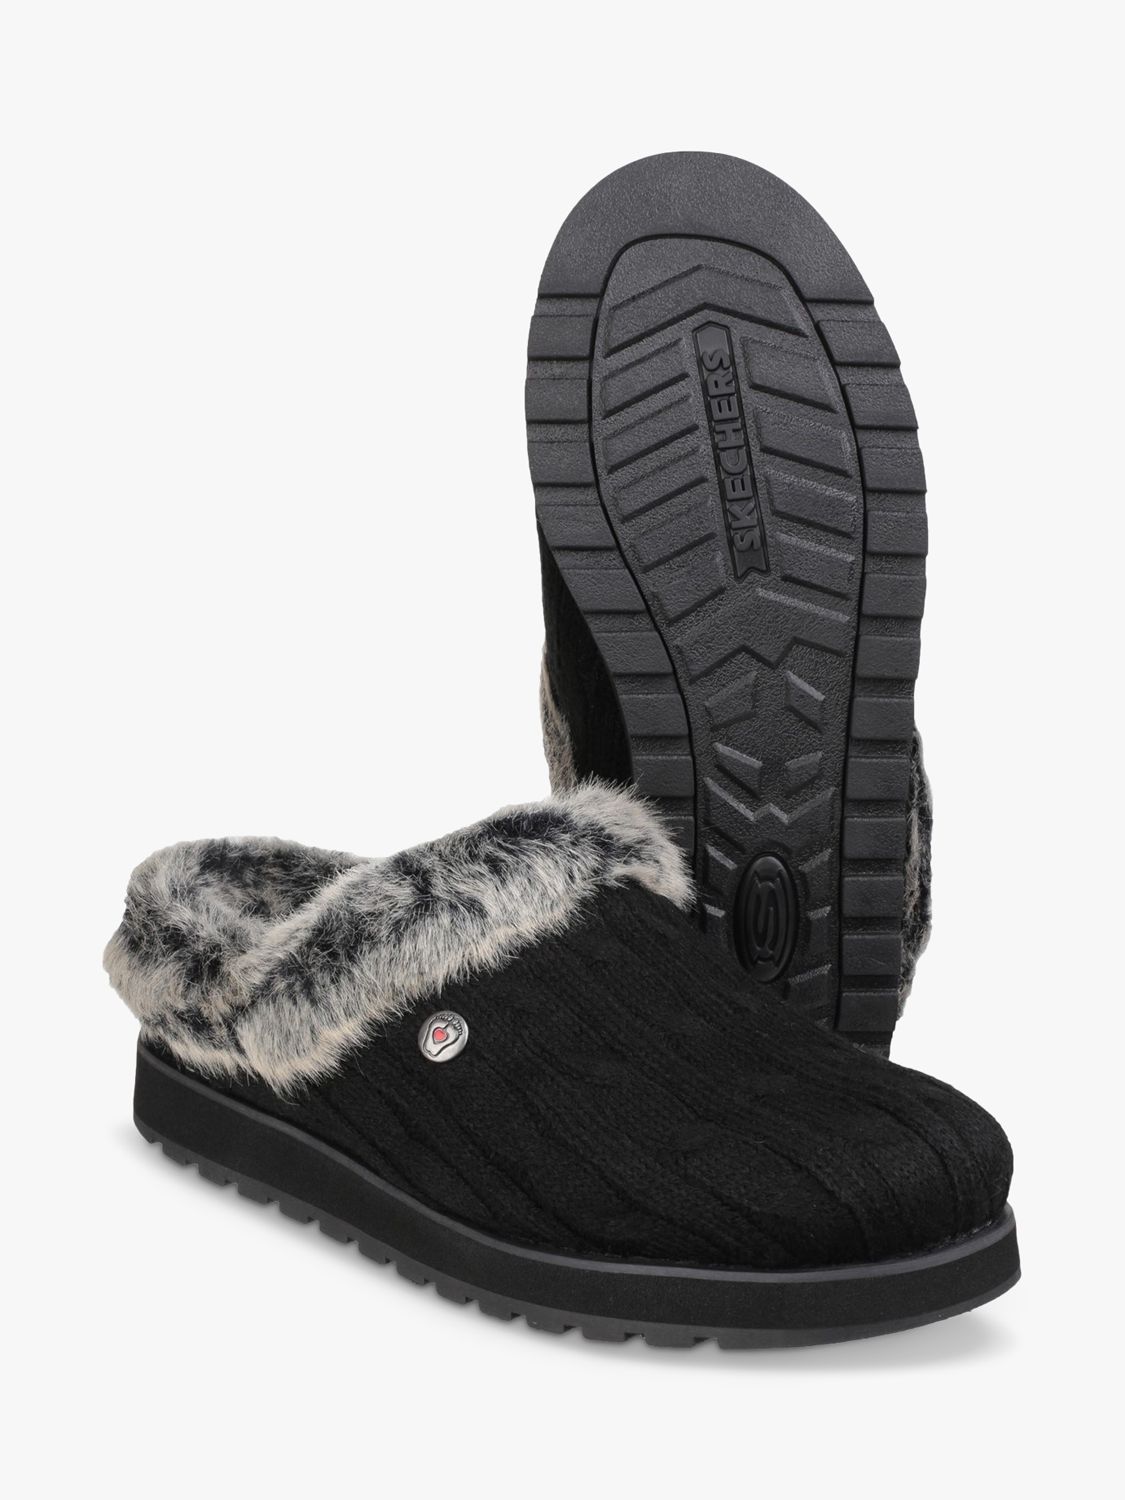 Buy Skechers Keepsakes Ice Angel Mule Slippers Online at johnlewis.com